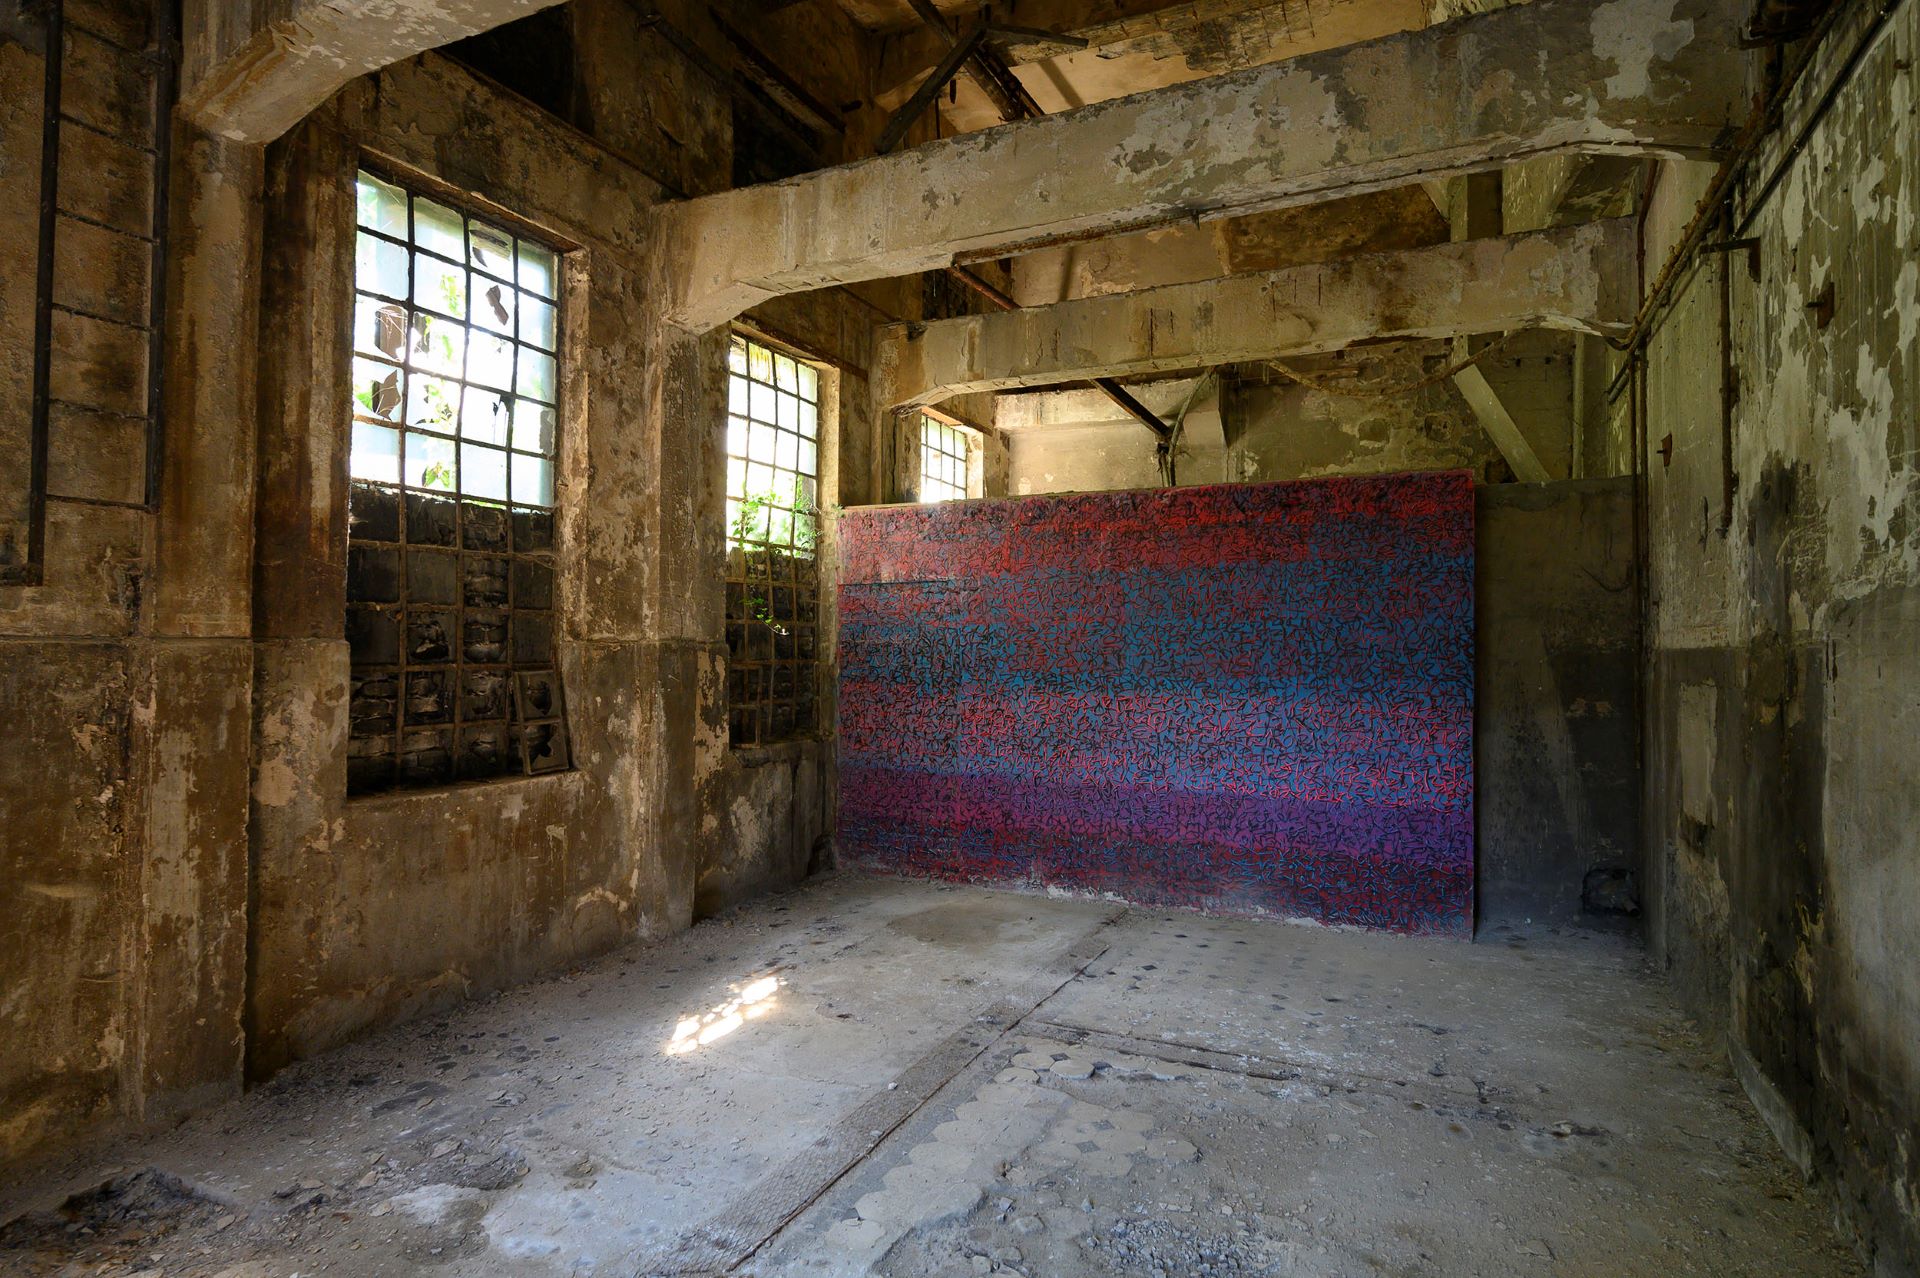 À l'intérieur de la hutte, une exposition d'art est présentée sous la forme d'un grand mur recouvert d'un motif abstrait et coloré.